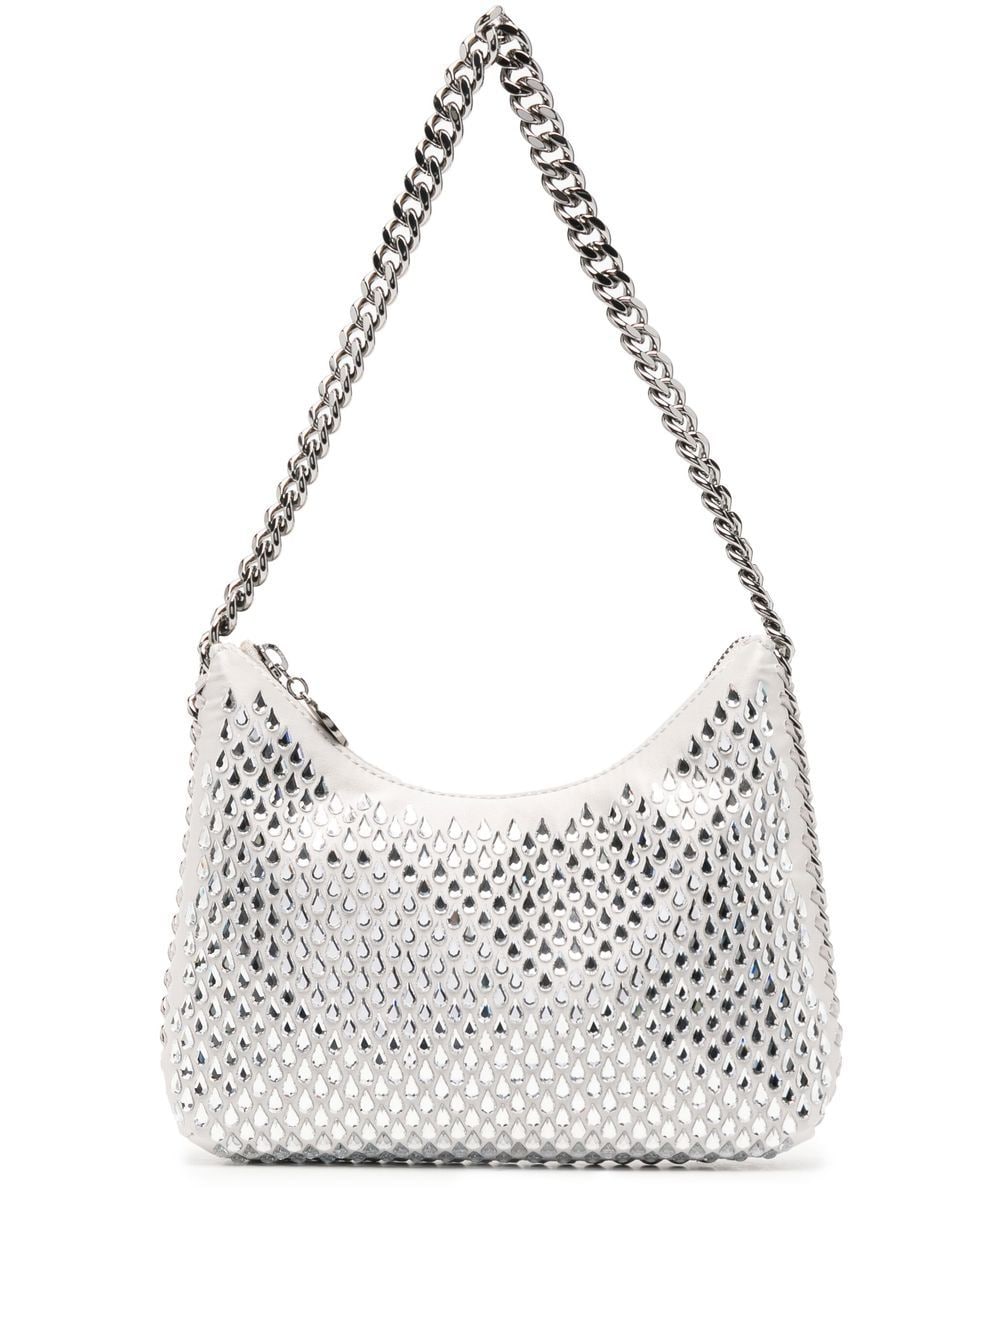 Stella McCartney Falabella crystal-embellished clutch bag - Grey